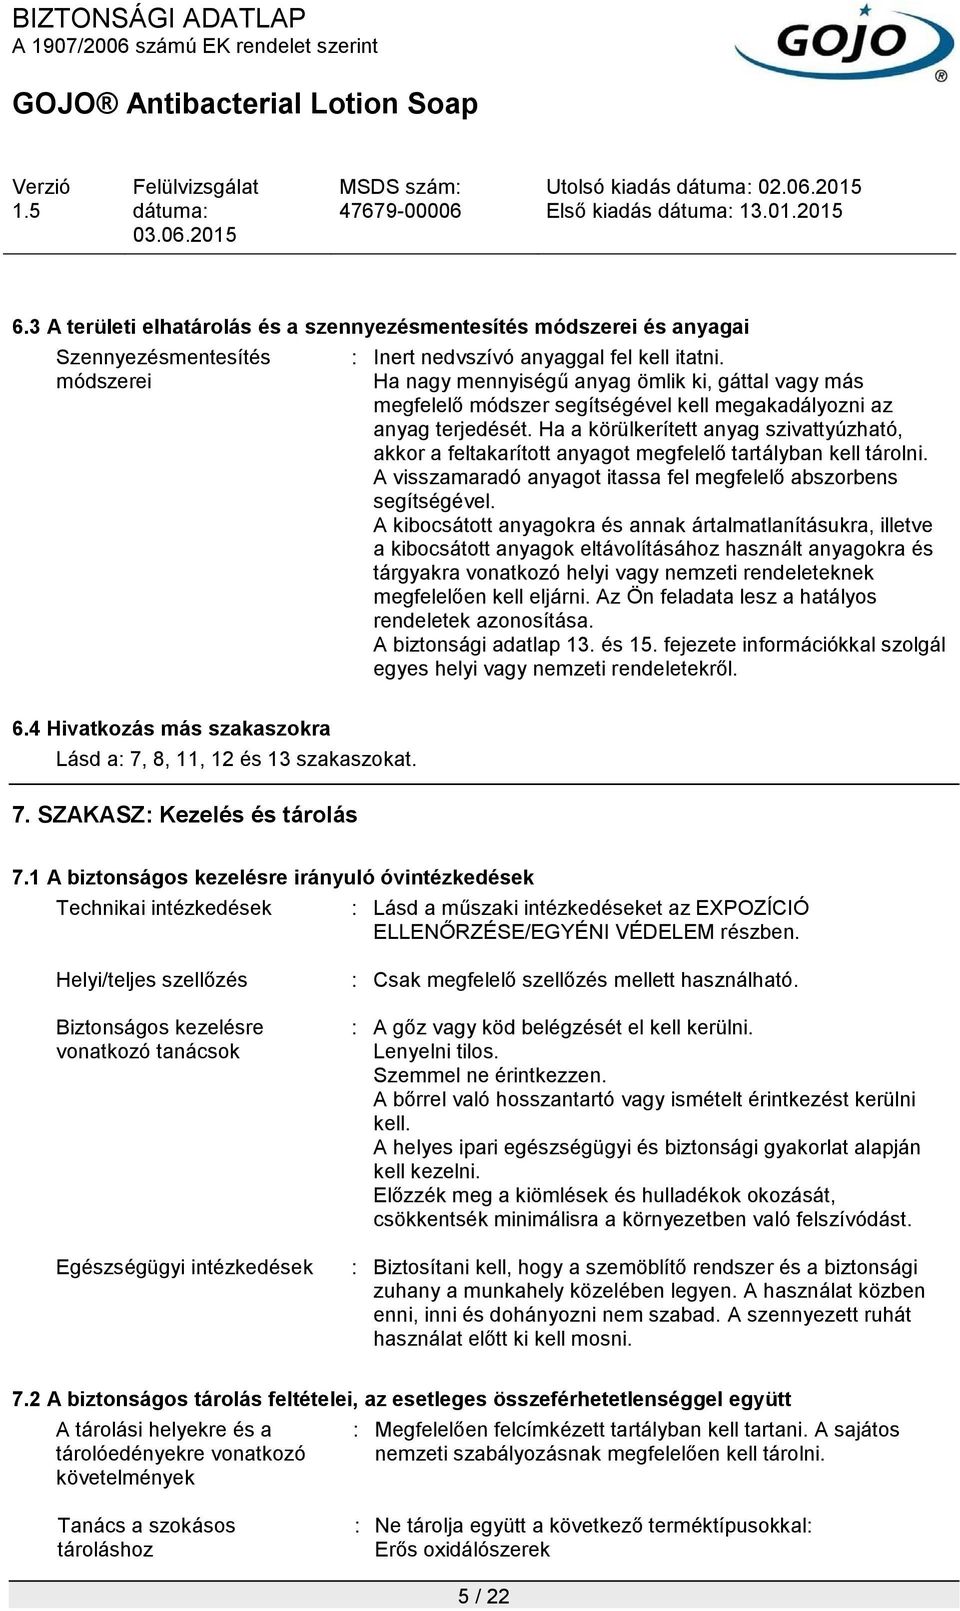 GOJO Antibacterial Lotion Soap - PDF Ingyenes letöltés